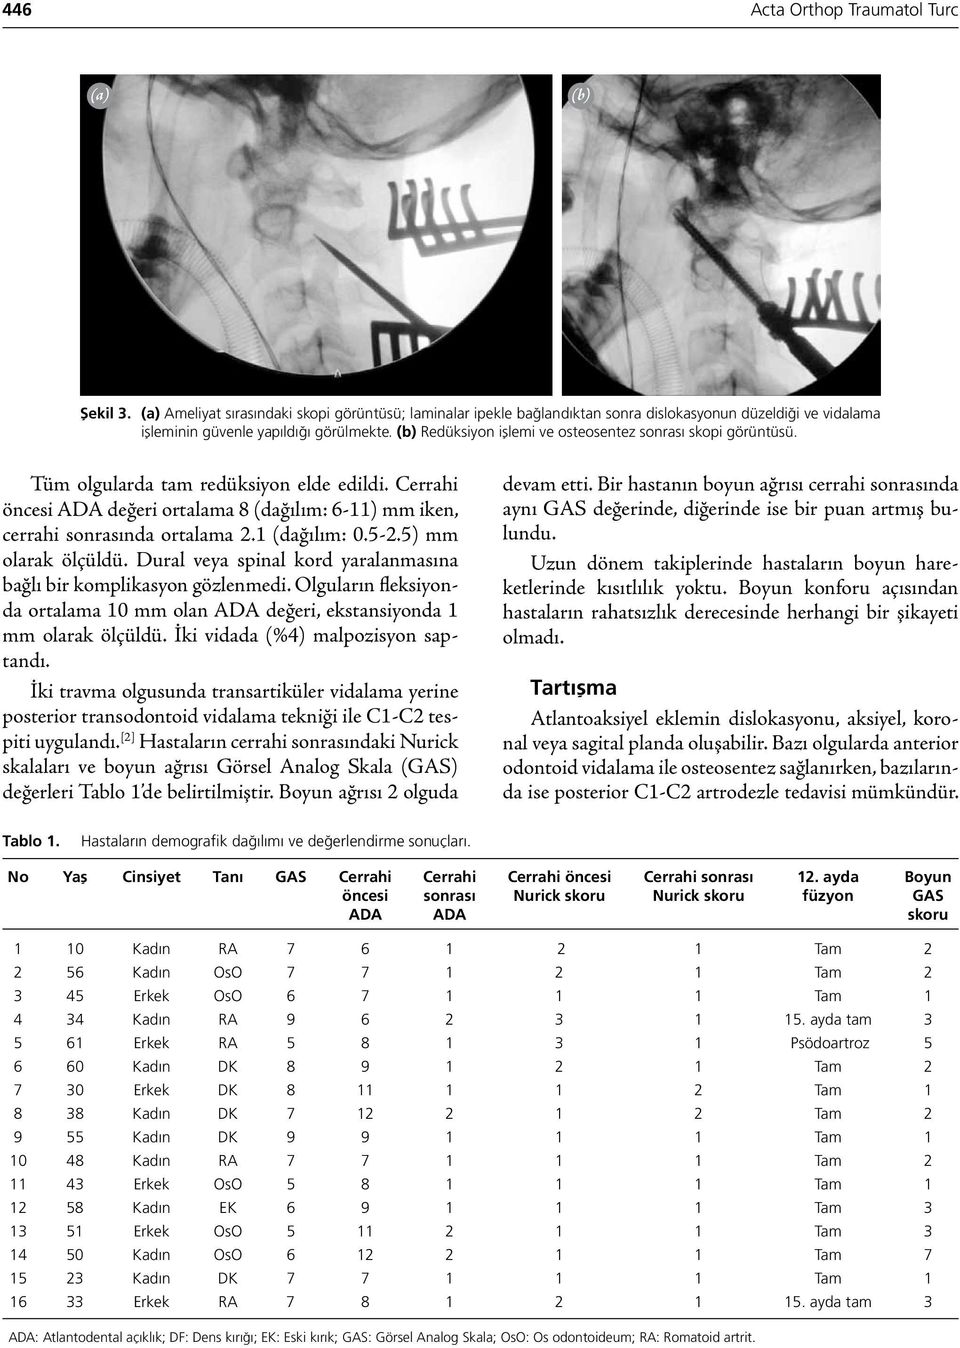 (b) Redüksiyon işlemi ve osteosentez sonrası skopi görüntüsü. Tüm olgularda tam redüksiyon elde edildi. Cerrahi öncesi ADA değeri ortalama 8 (dağılım: 6-11) mm iken, cerrahi sonrasında ortalama 2.